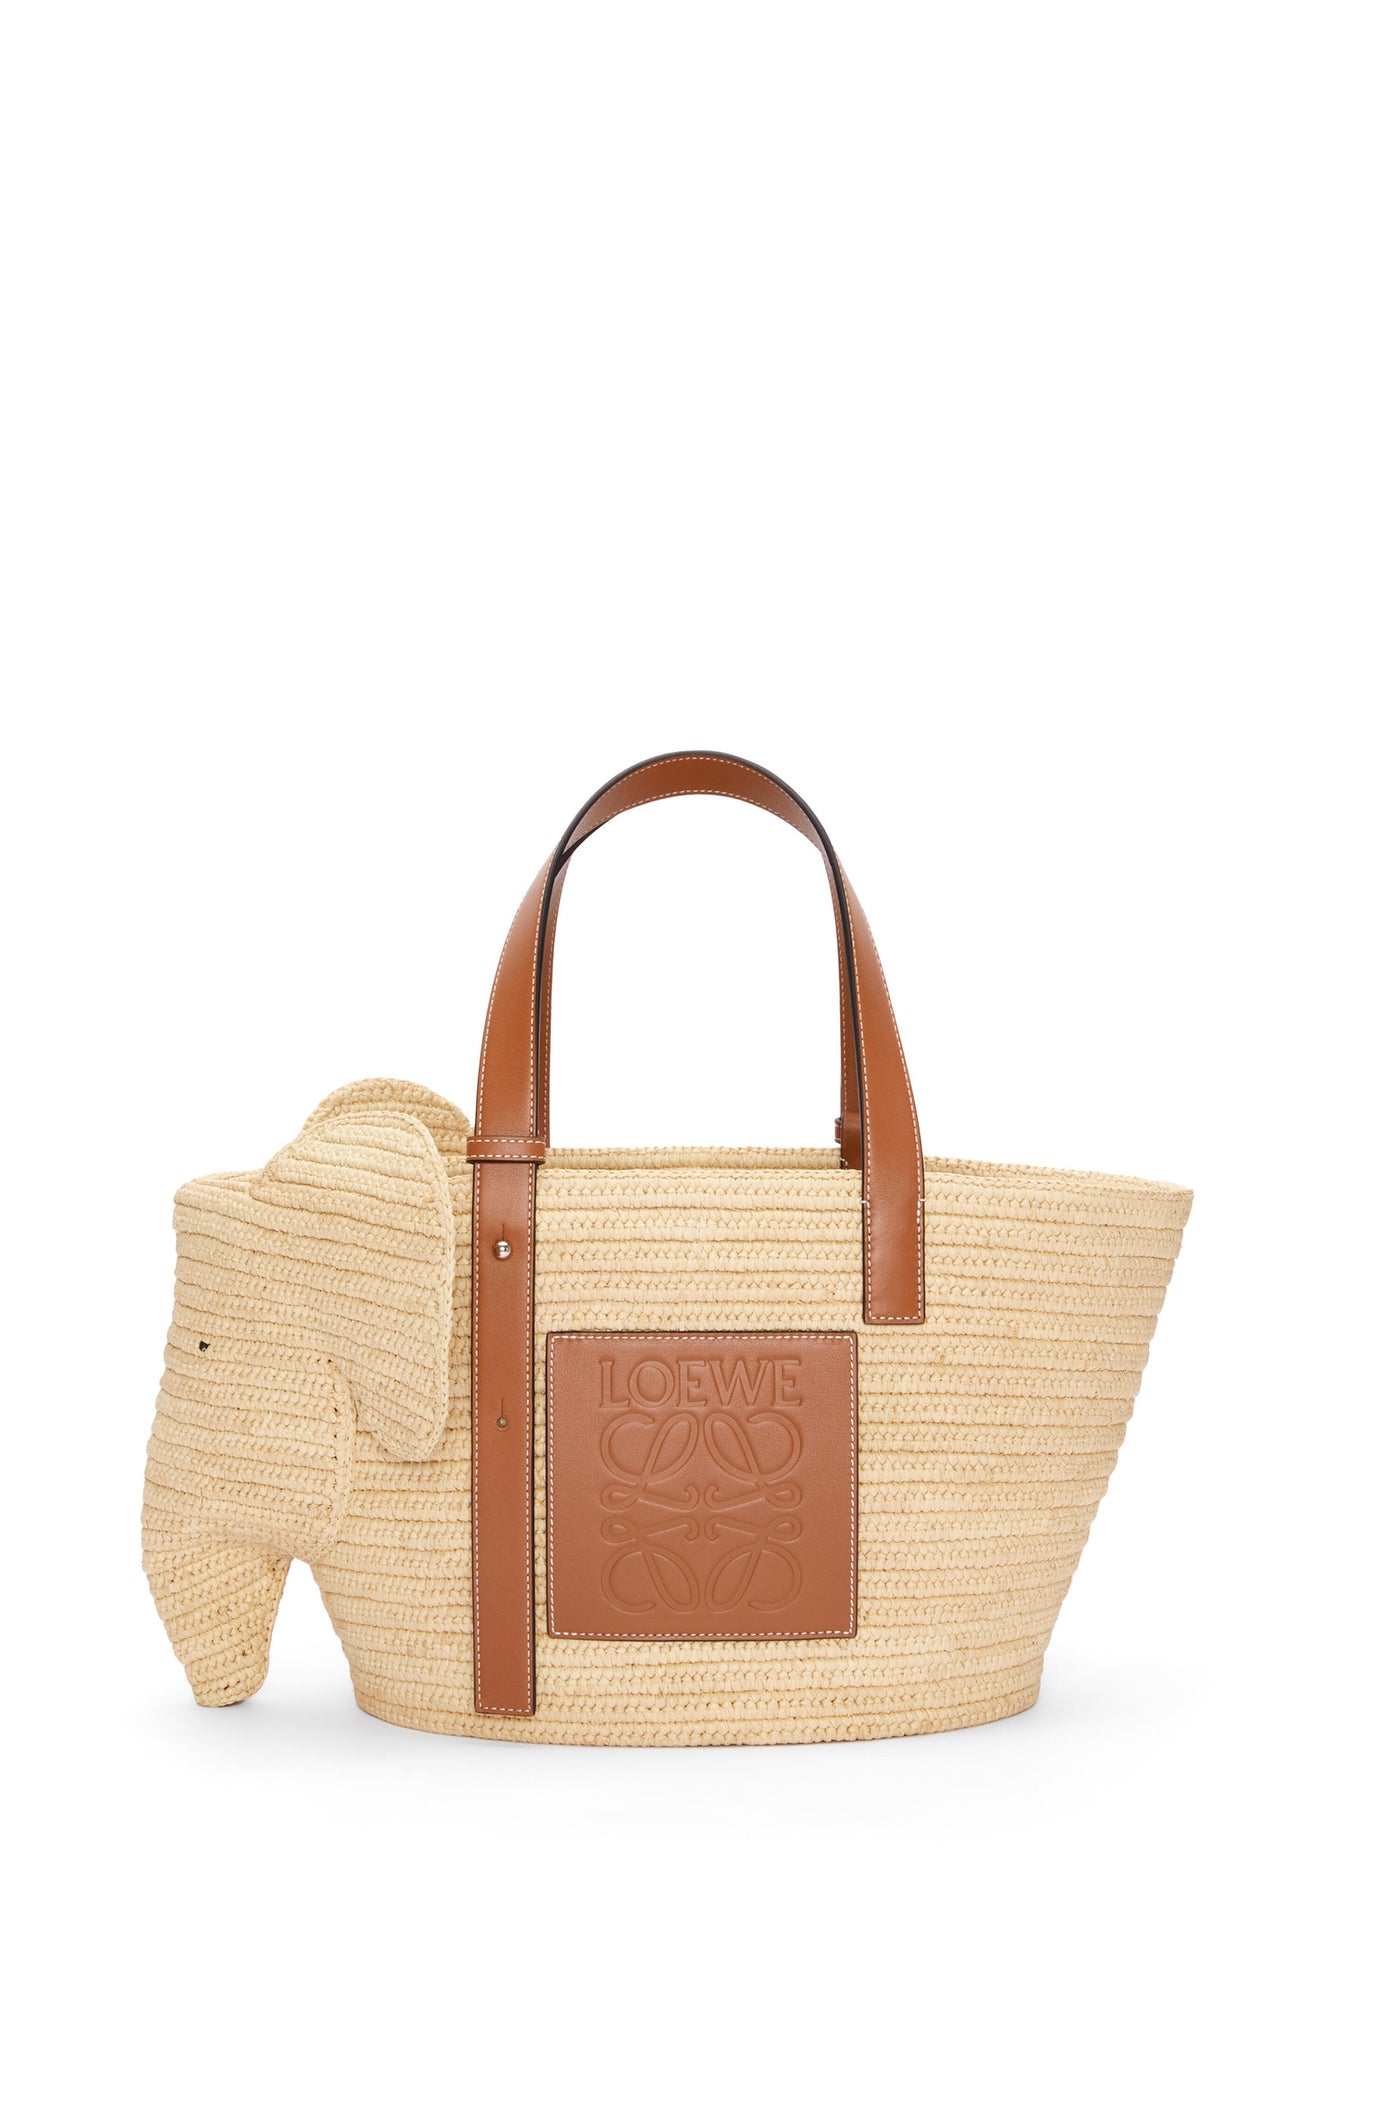 LOEWE - Elephant basket bag